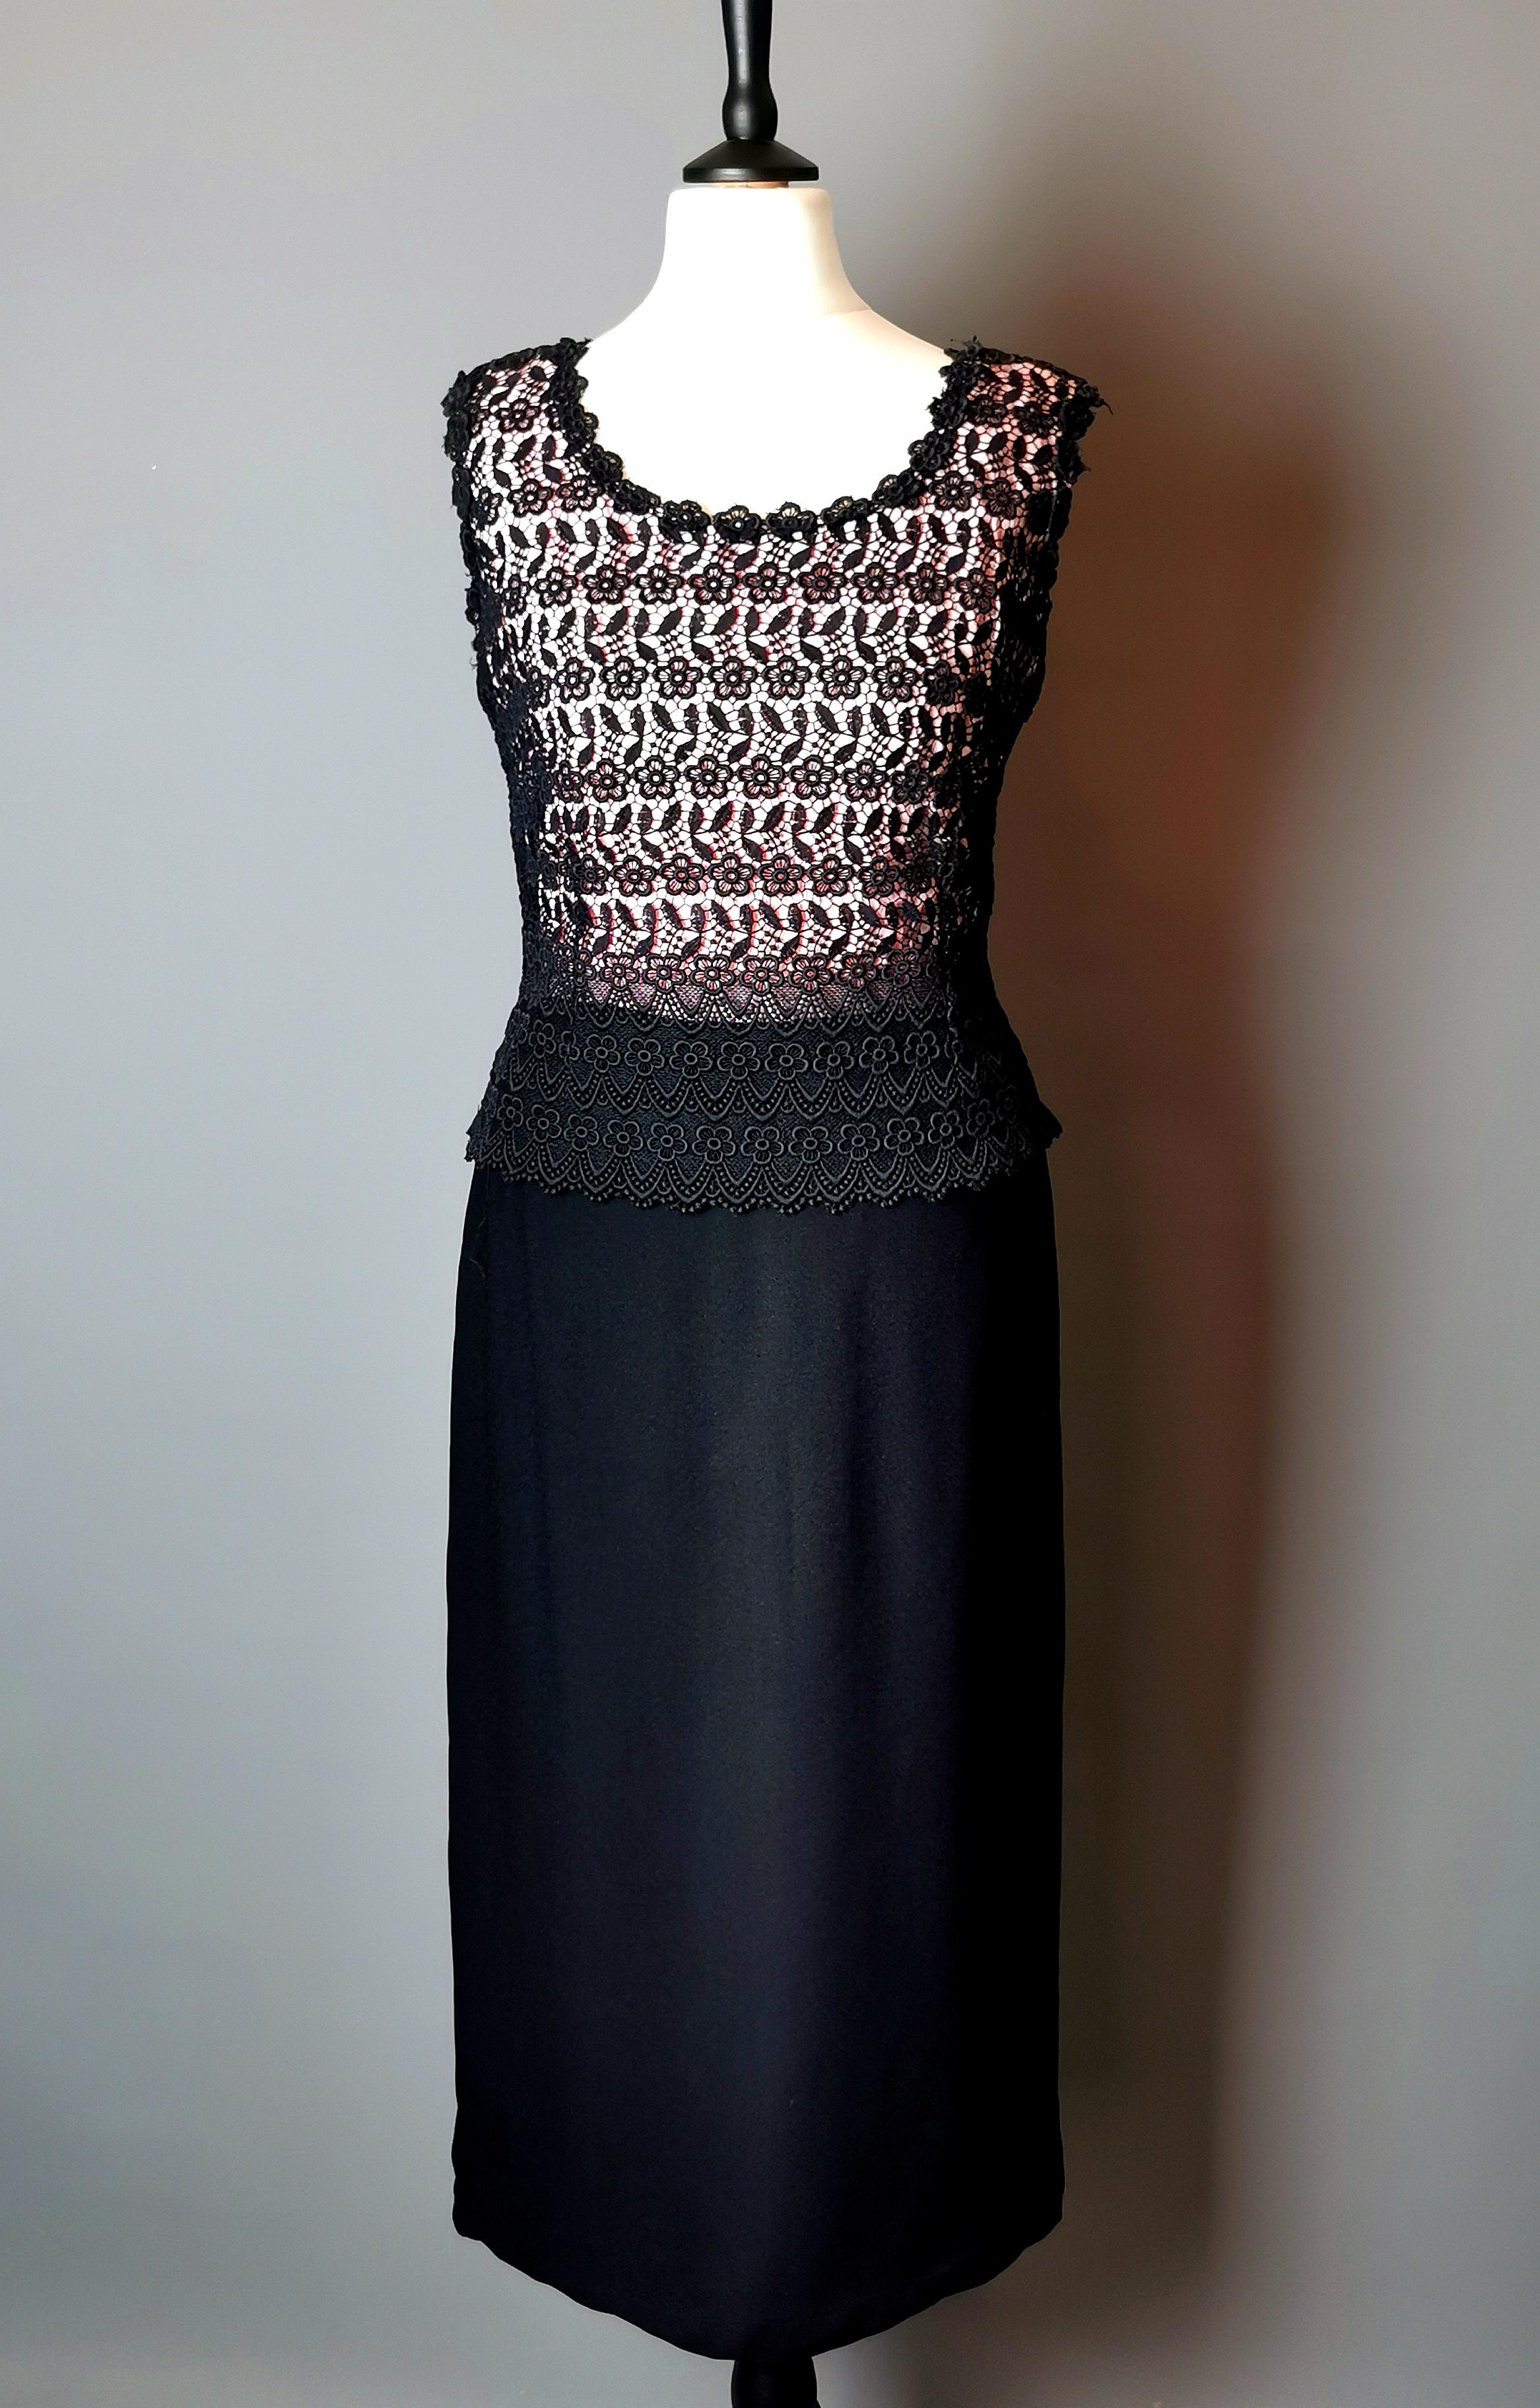 Une magnifique robe fourreau vintage des années 1970, recouverte de dentelle guipure.

Une robe moulante avec une silhouette fourreau en noir avec un corsage rose, le corsage rose a une superposition de dentelle guipure noire.

Il est fabriqué à